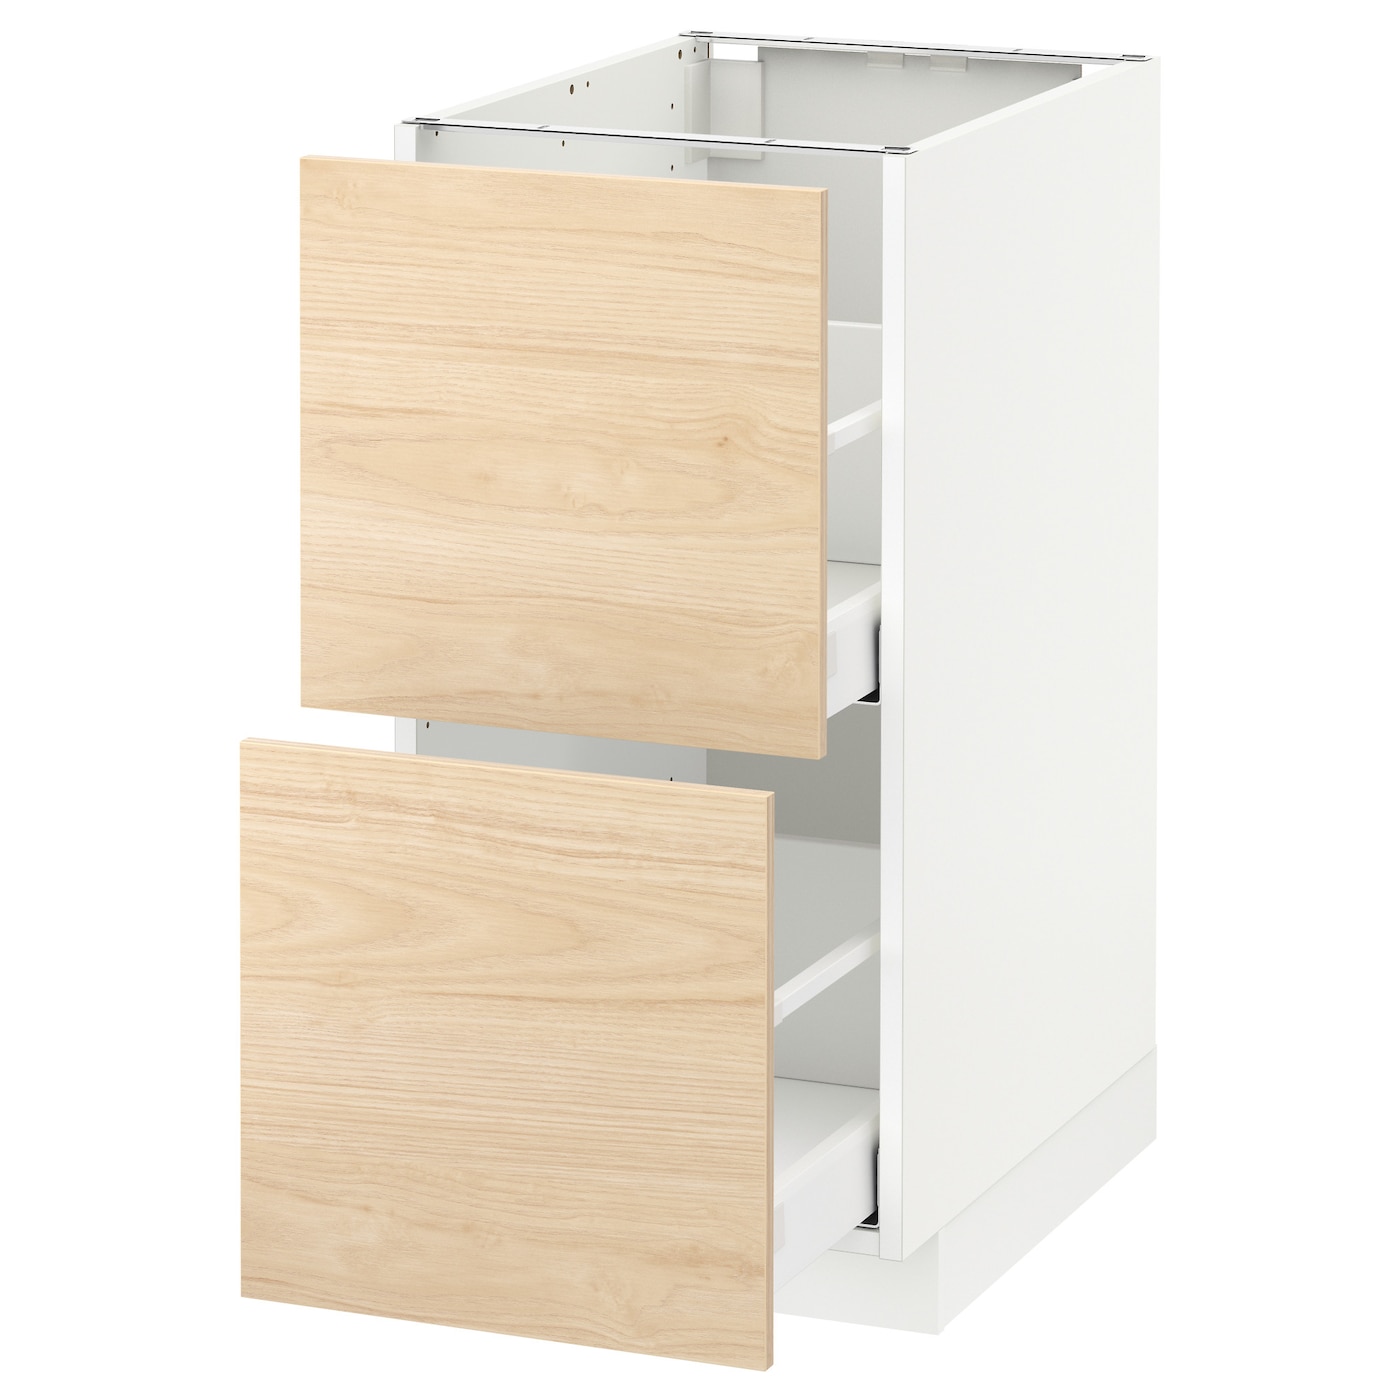 Напольный кухонный шкаф  - IKEA METOD MAXIMERA, 88x61,6x40см, белый/светло-коричневый, МЕТОД МАКСИМЕРА ИКЕА